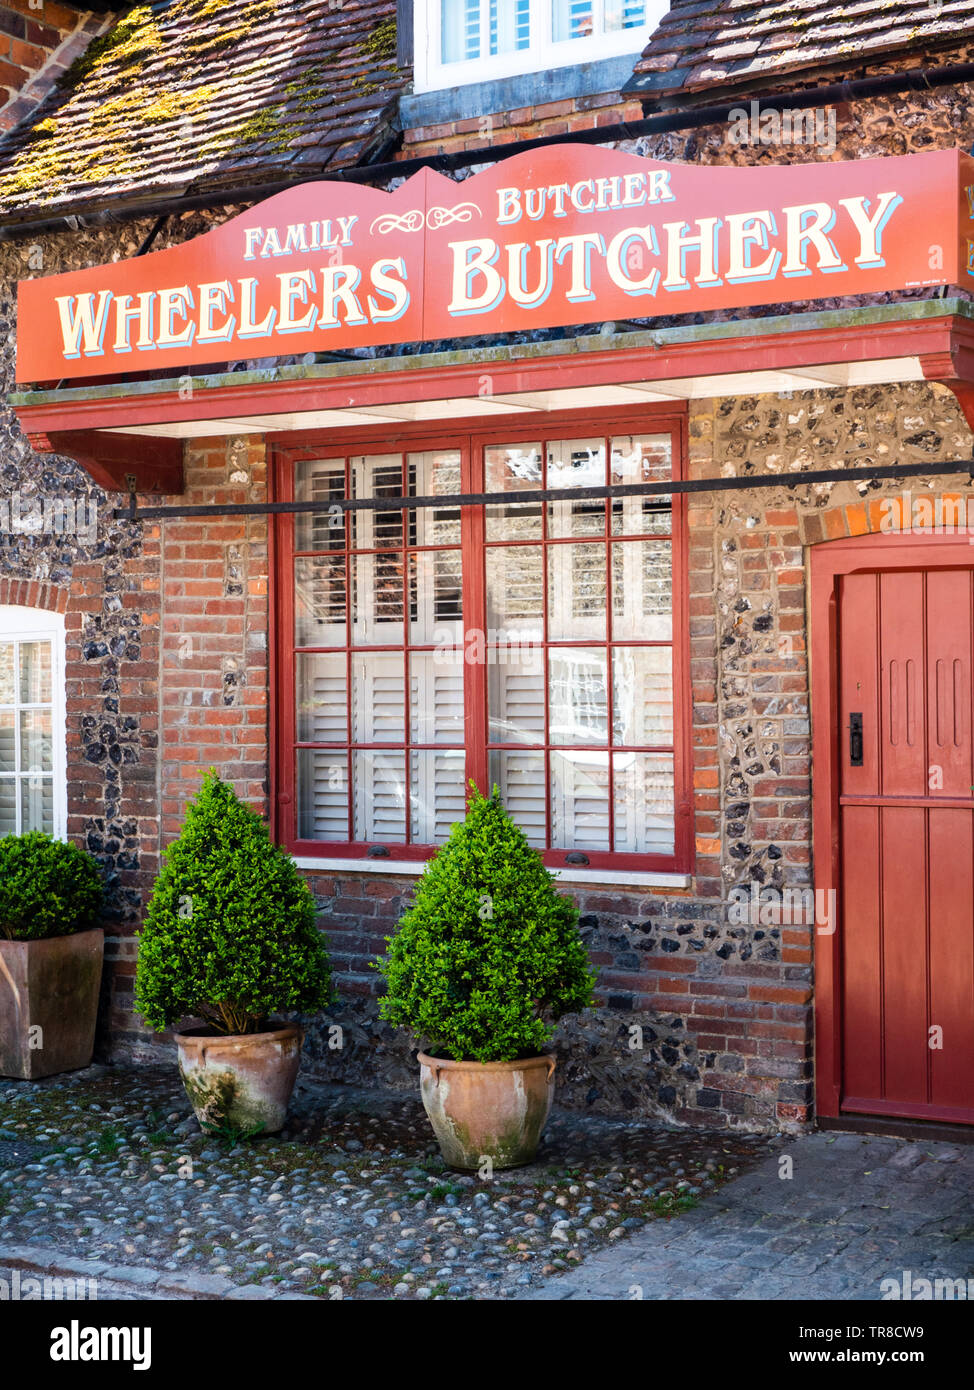 Family Butcher, Wheelers Butchery, Hamblden, Buckinghamshire, England, UK, GB. Stock Photo